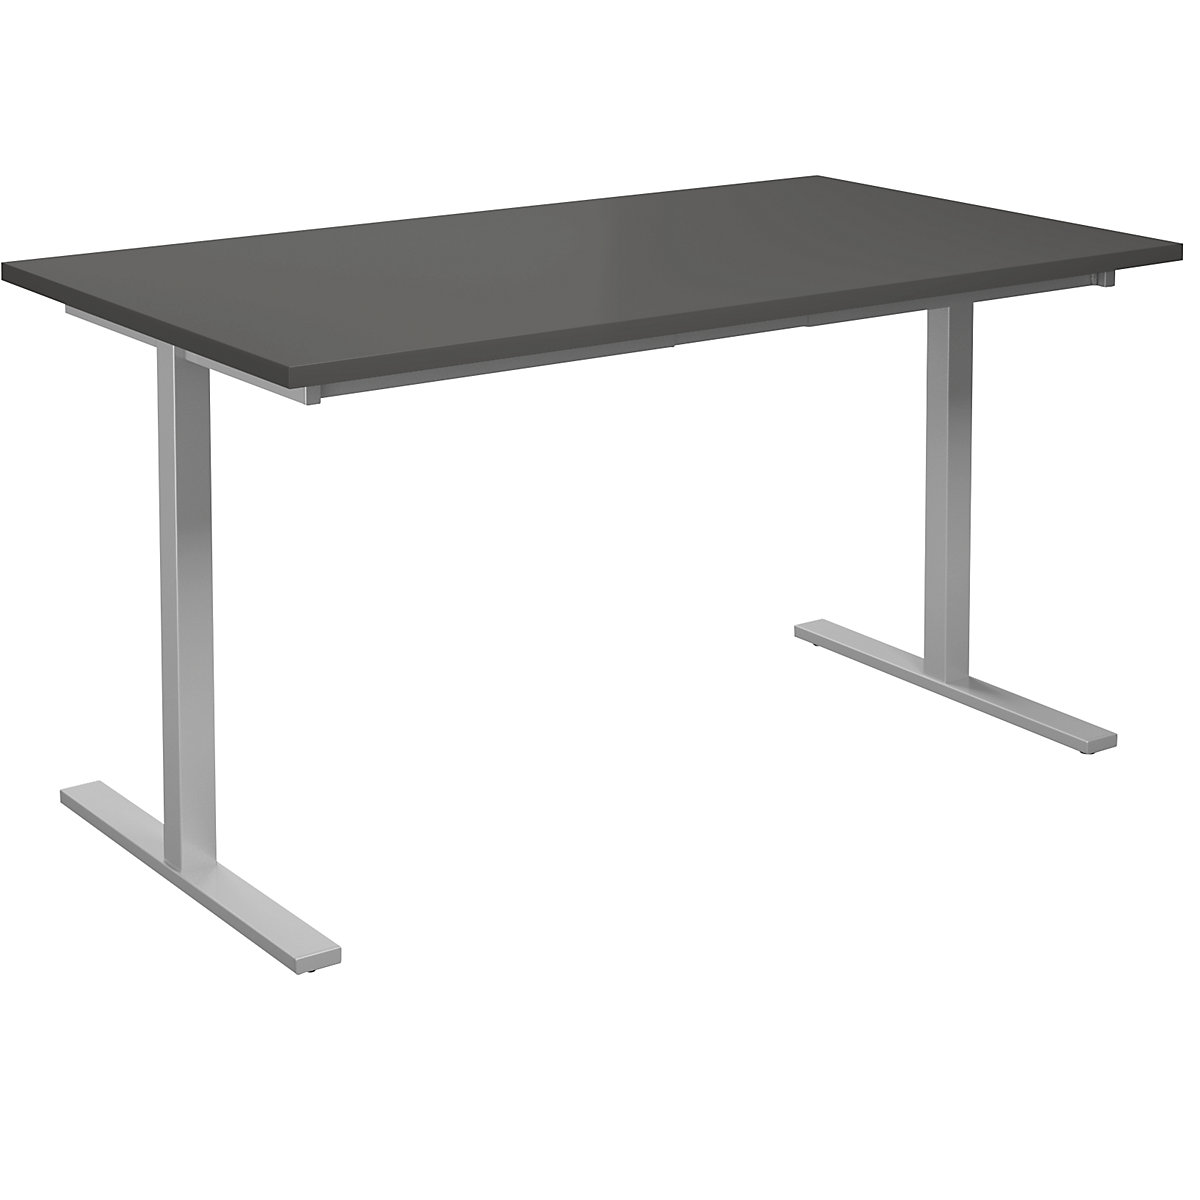 DUO-T multi-purpose desk, straight tabletop, WxD 1400 x 800 mm, dark grey, silver-5